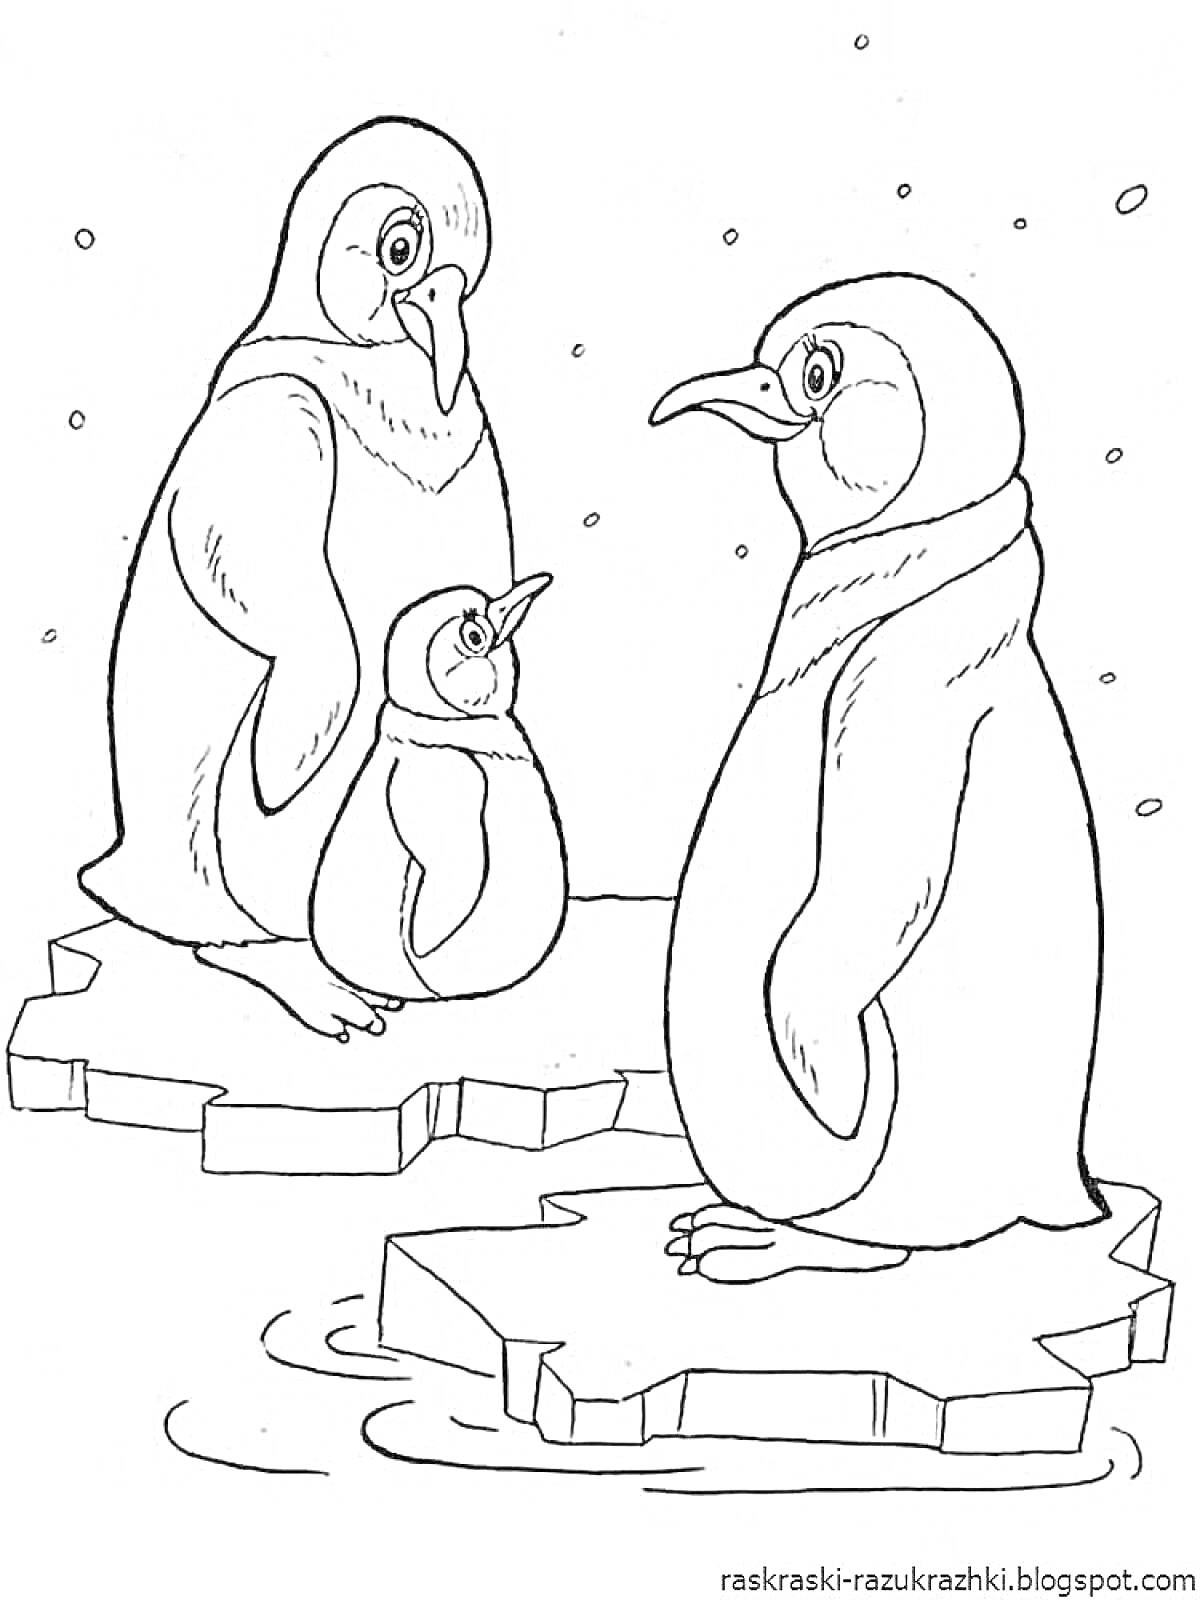 На раскраске изображено: Пингвины, Льдины, Снег, Зима, Животные севера, Природа, Северные животные, Антарктида